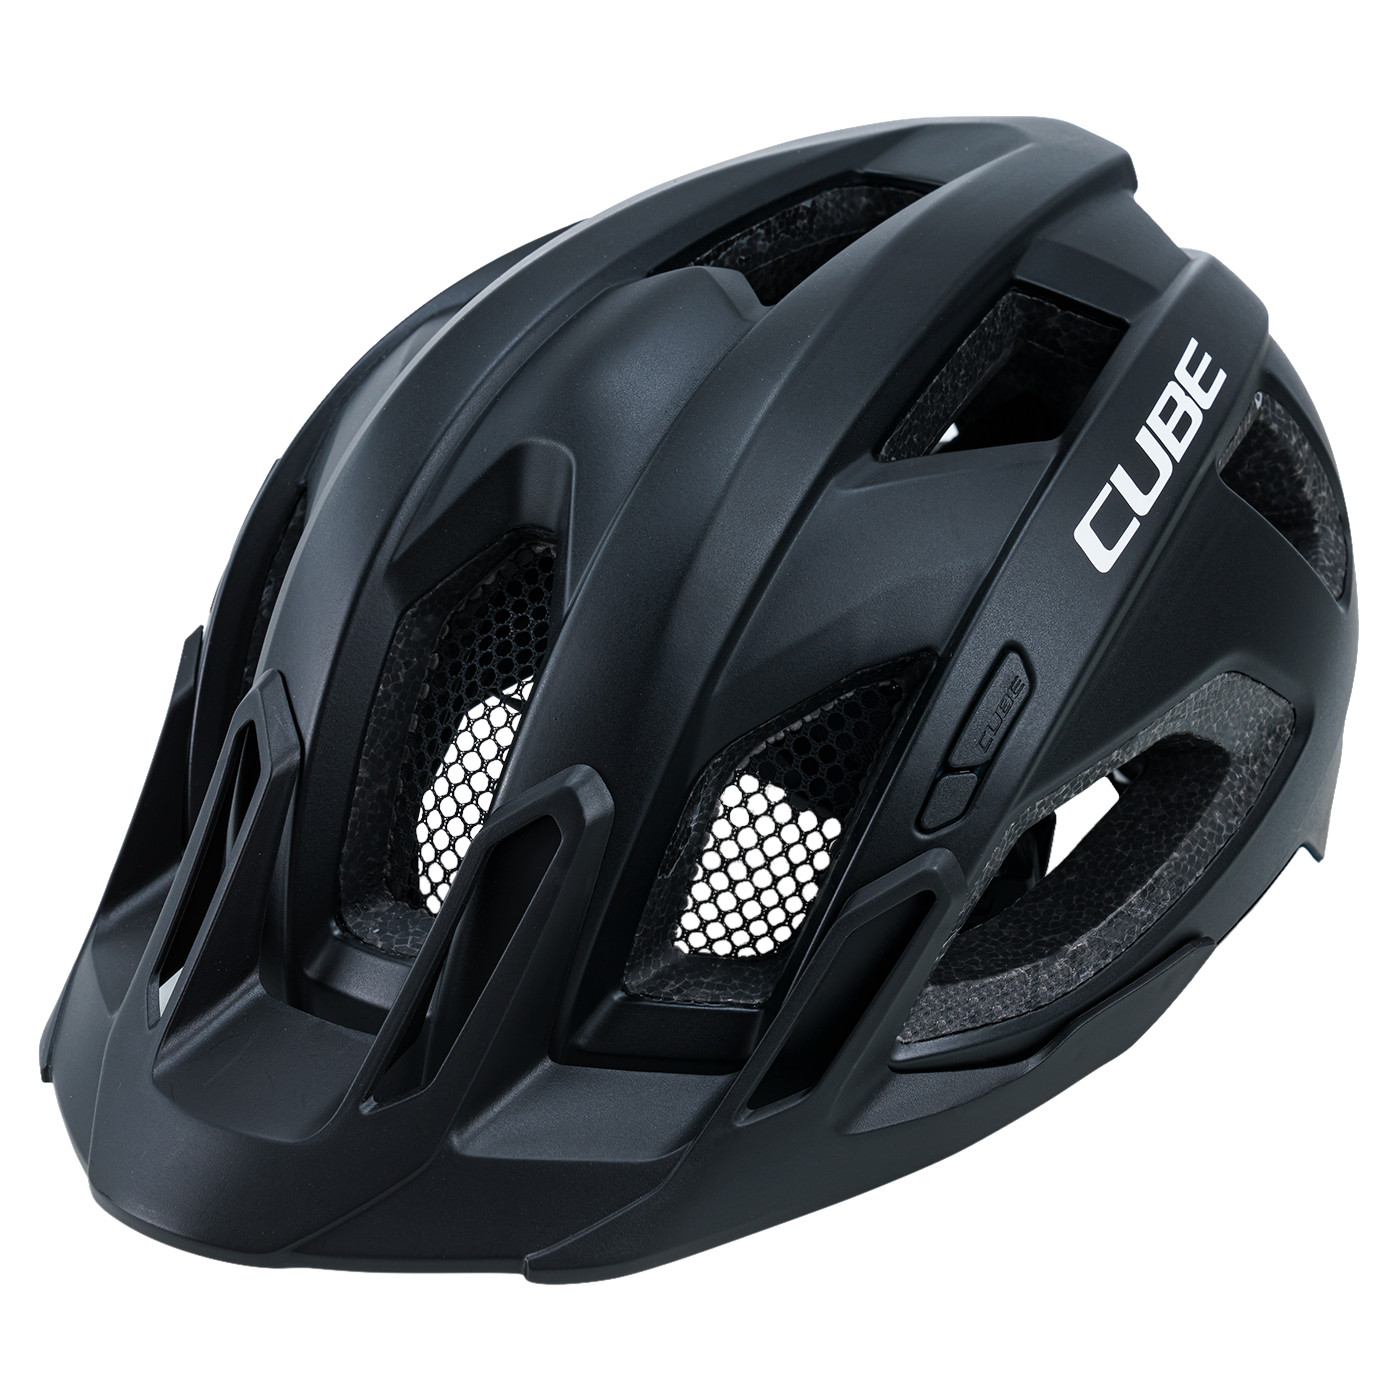 Produktbild von CUBE QUEST Helm - schwarz